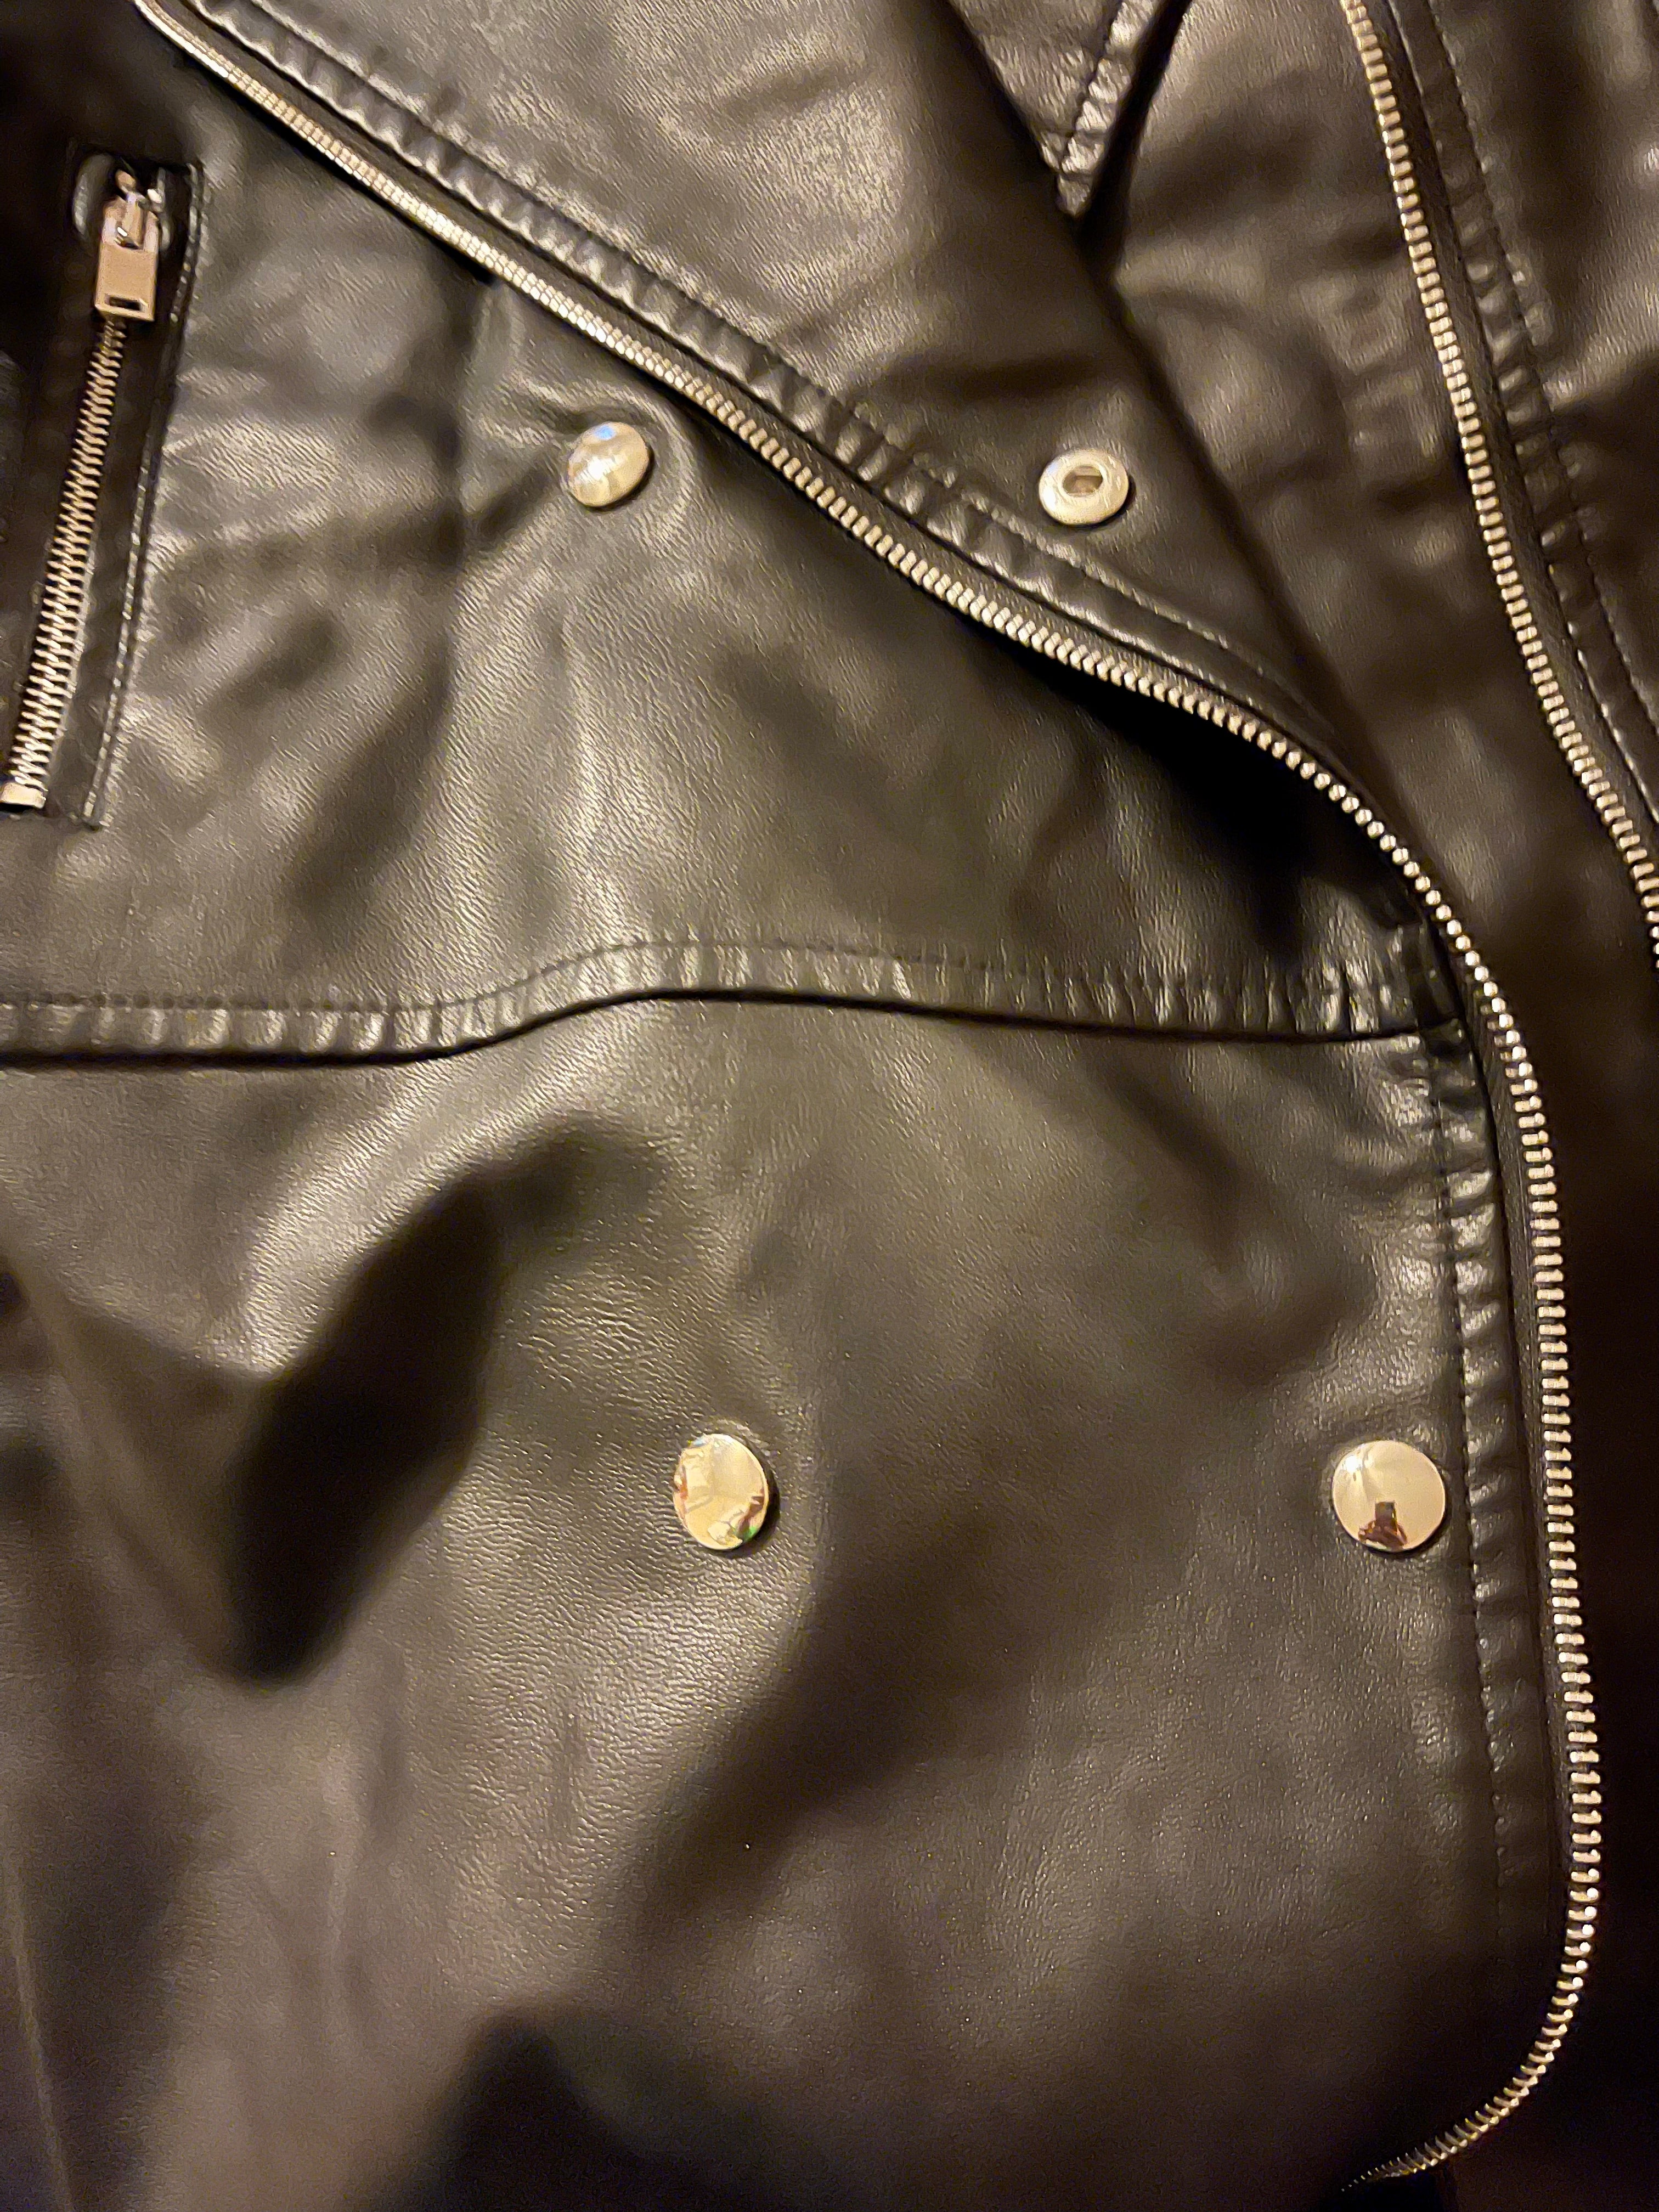 GOLDxTEAL vegan leather moto jacket.